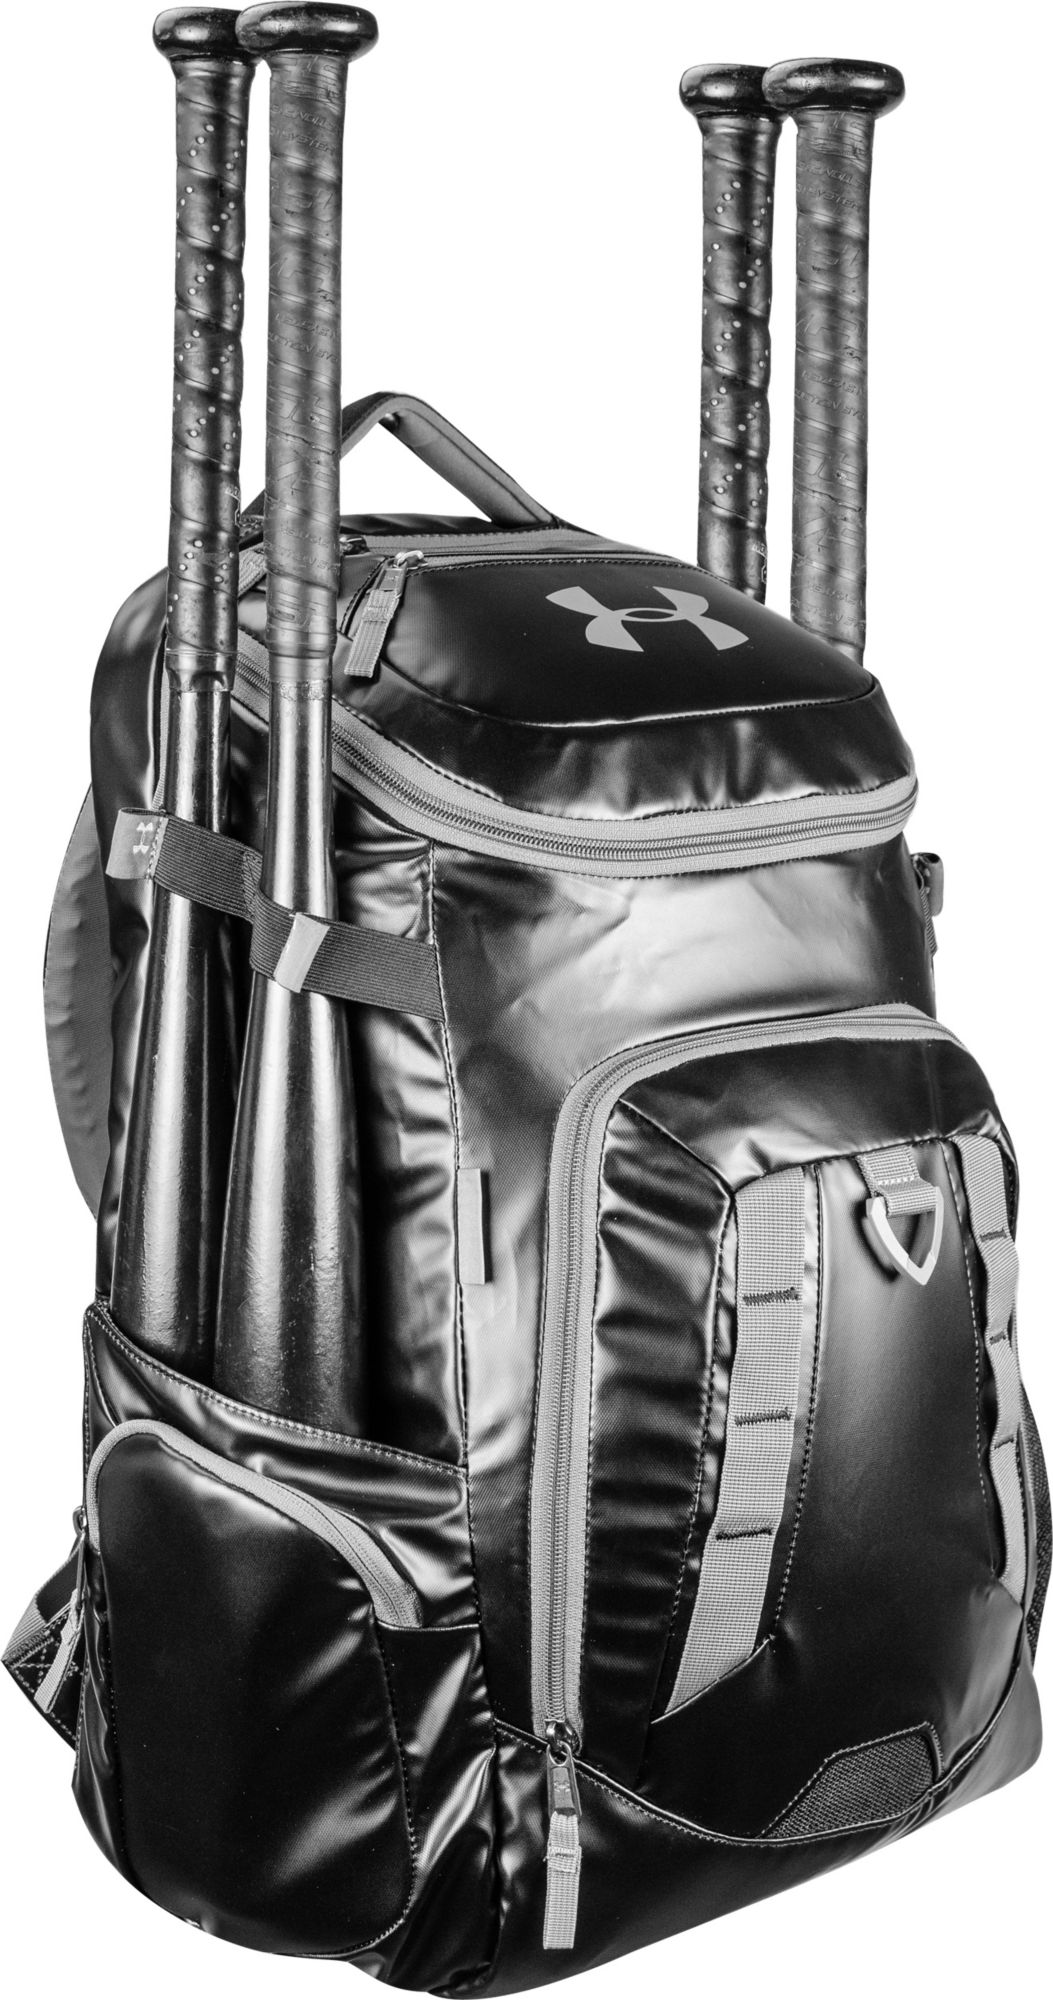 under armor baseball backpack